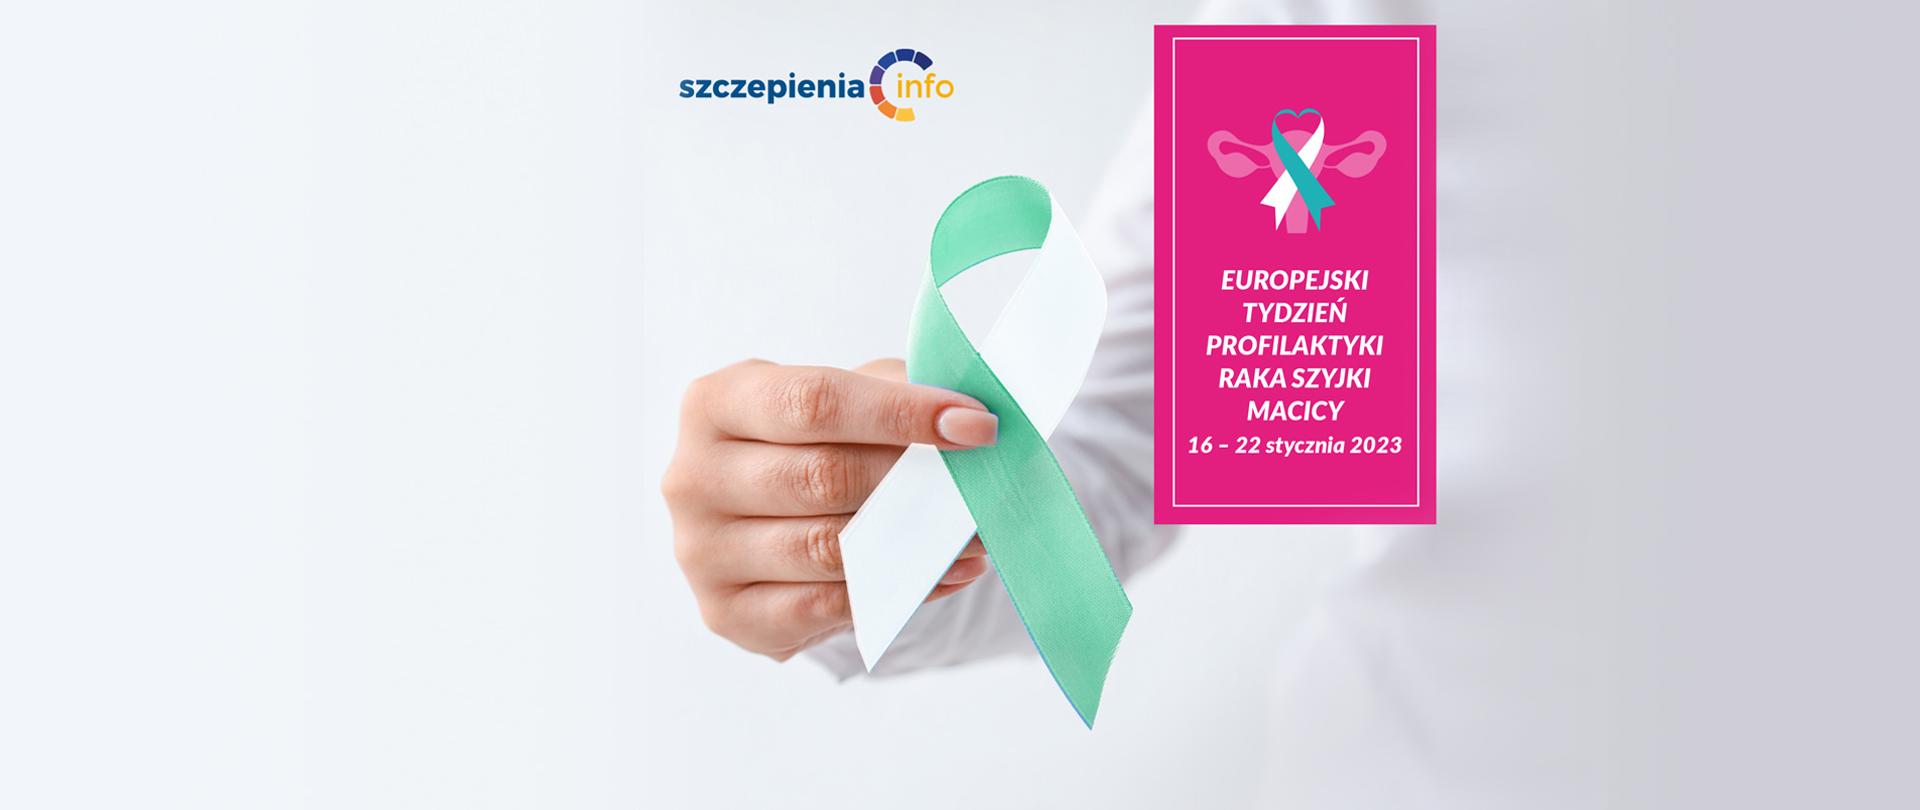 Zdjęcie kobiecej dłoni trzymającej wstążeczkę zielono-białą. Obok napis : Europejski Tydzień Profilaktyki Radka Szyjki Macicy 16-22 stycznia 2023